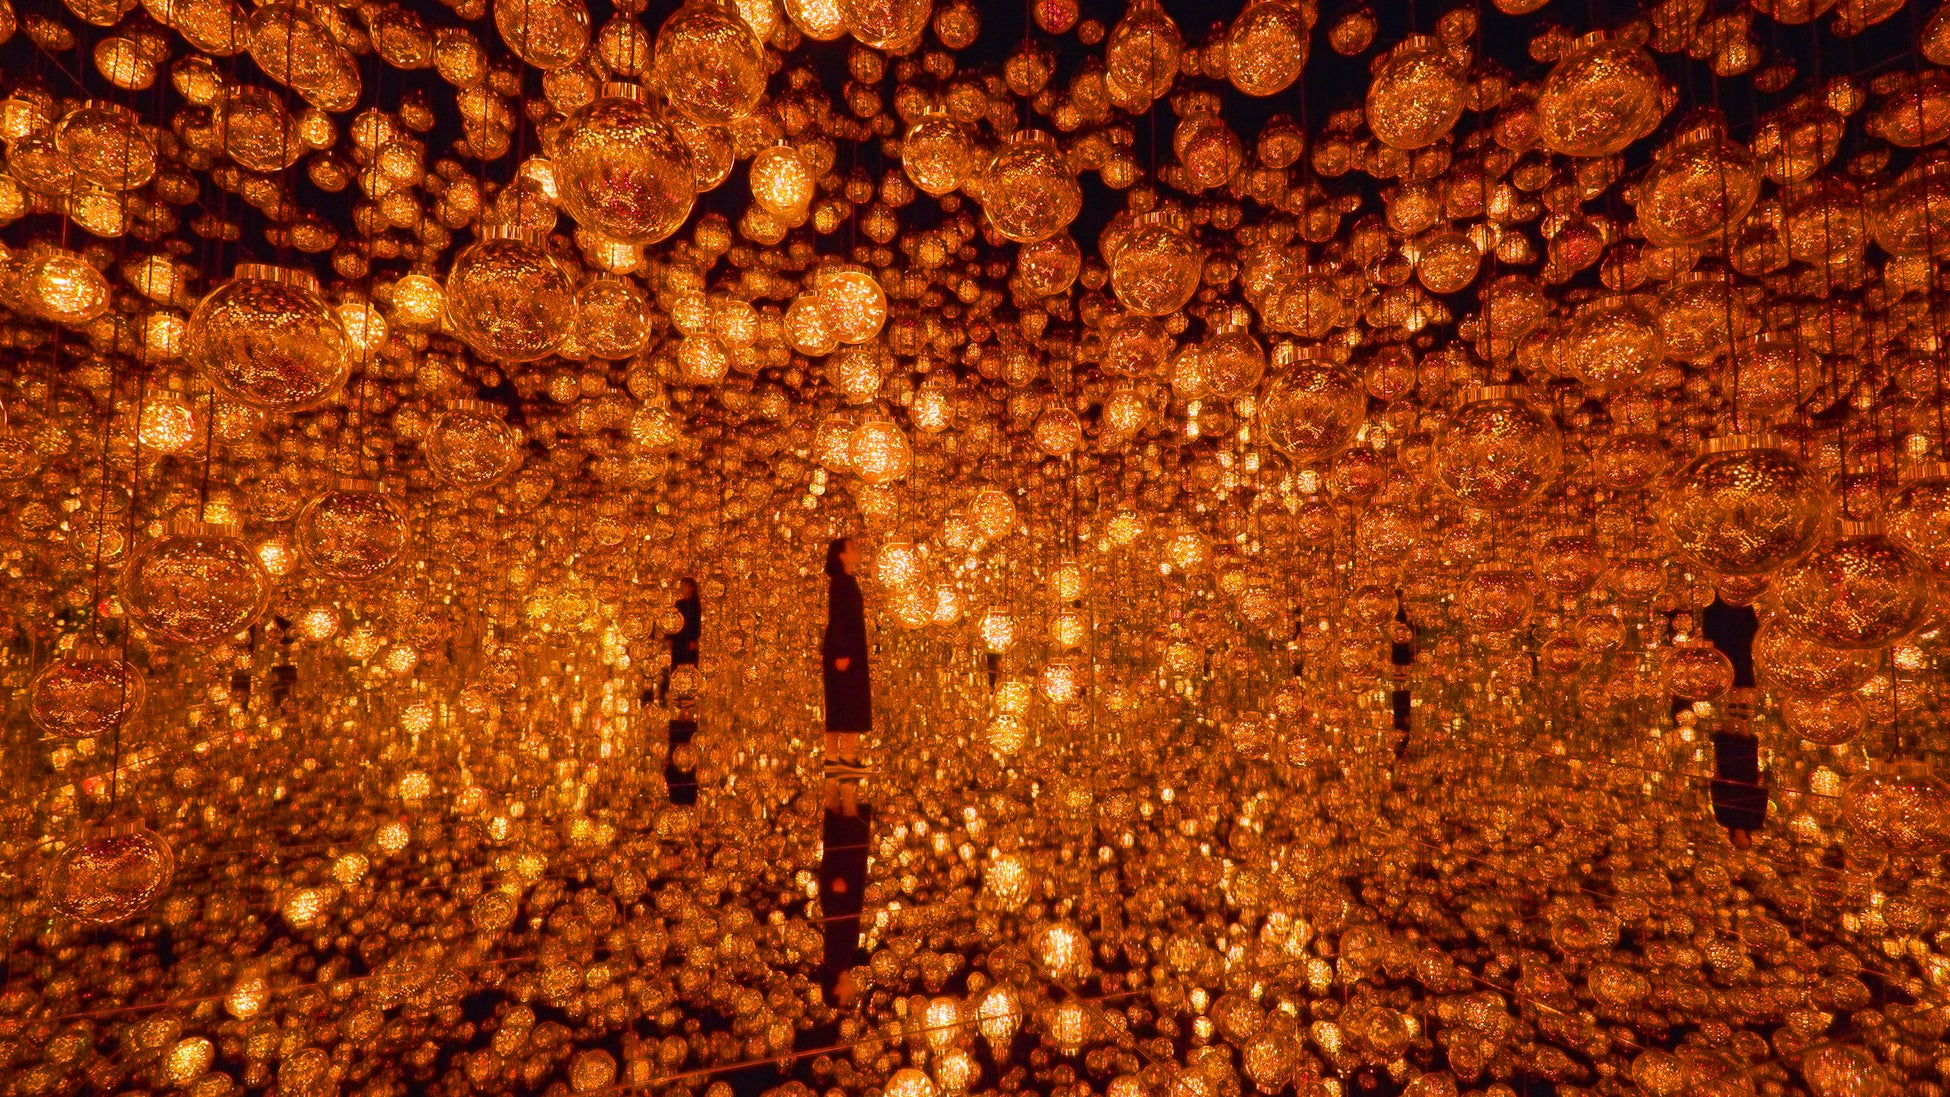 Fire／チームラボ《Bubble Universe：実体光、光のシャボン玉、ぷるんぷるんの光、環境によって生み出される光 》© チームラボ